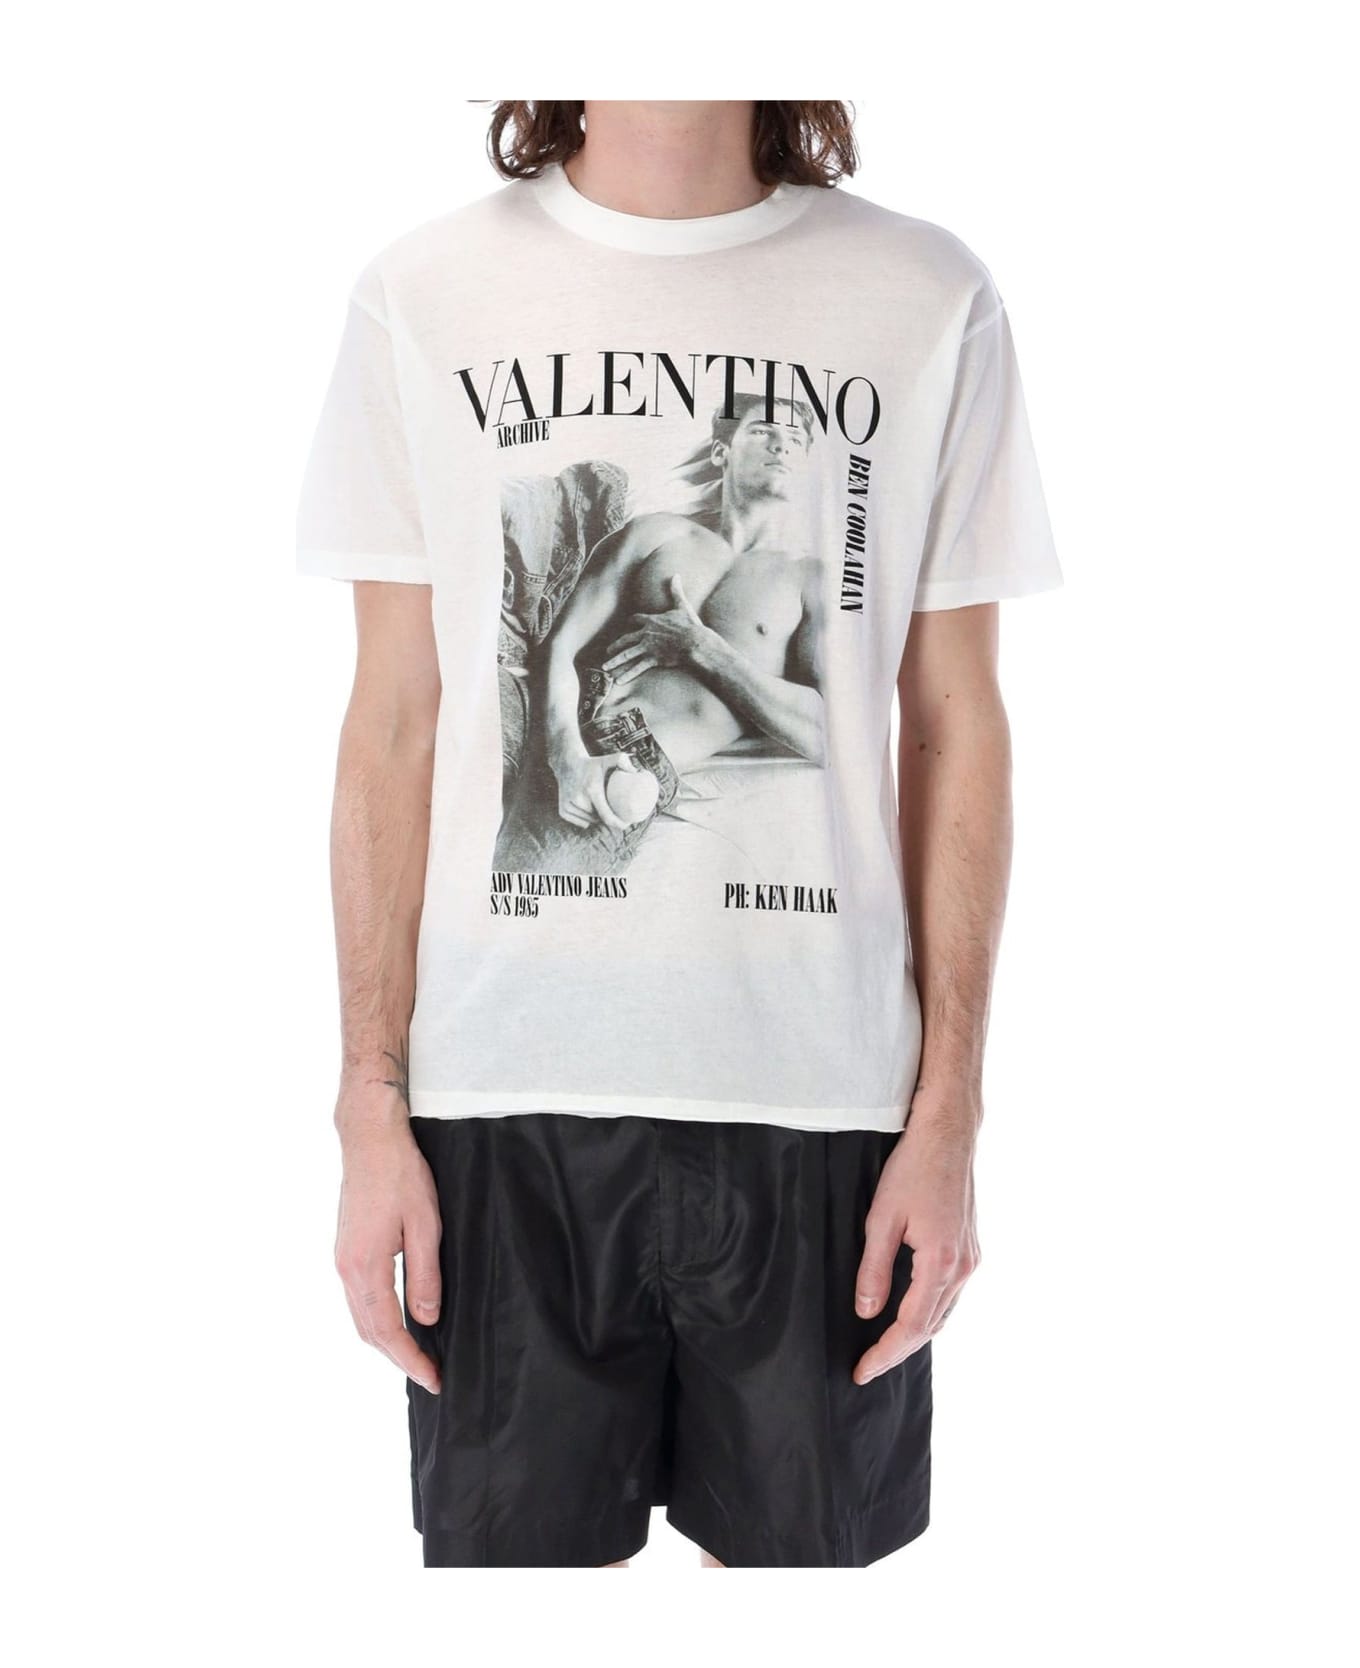 Valentino Archive Print T-shirt - White シャツ